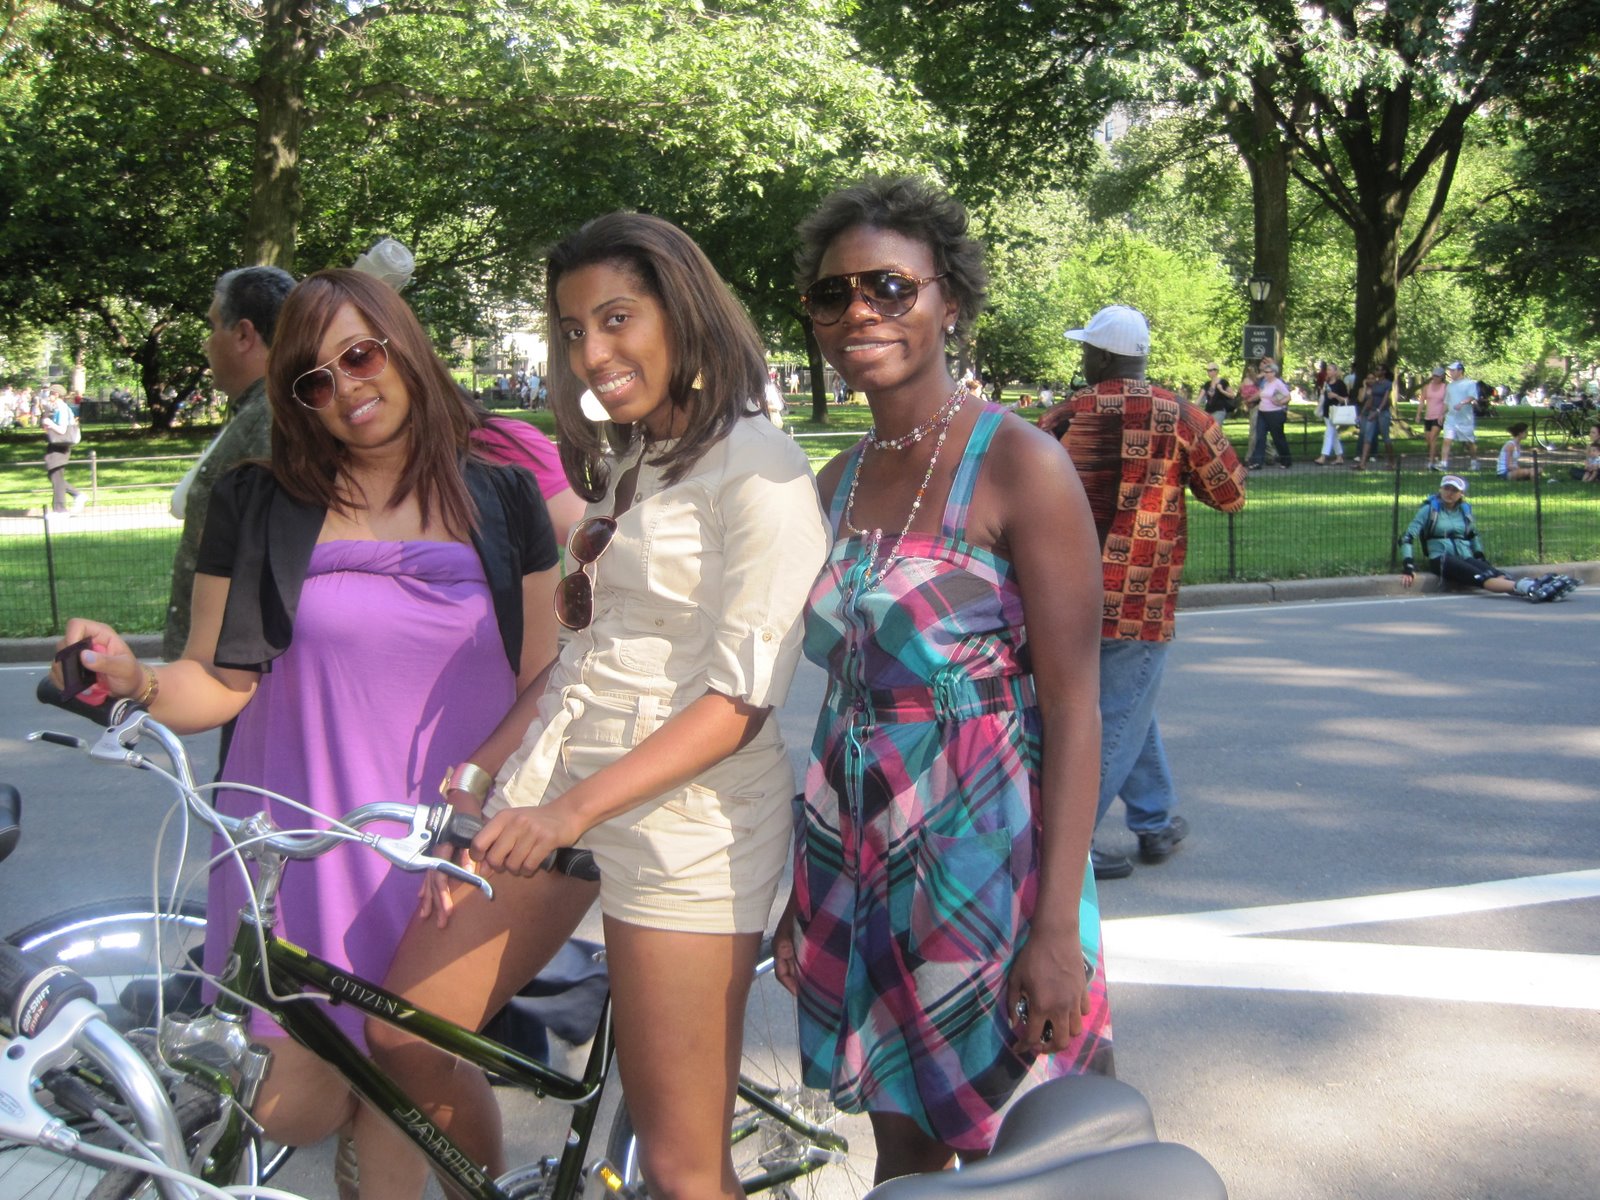 Biking In Central Park